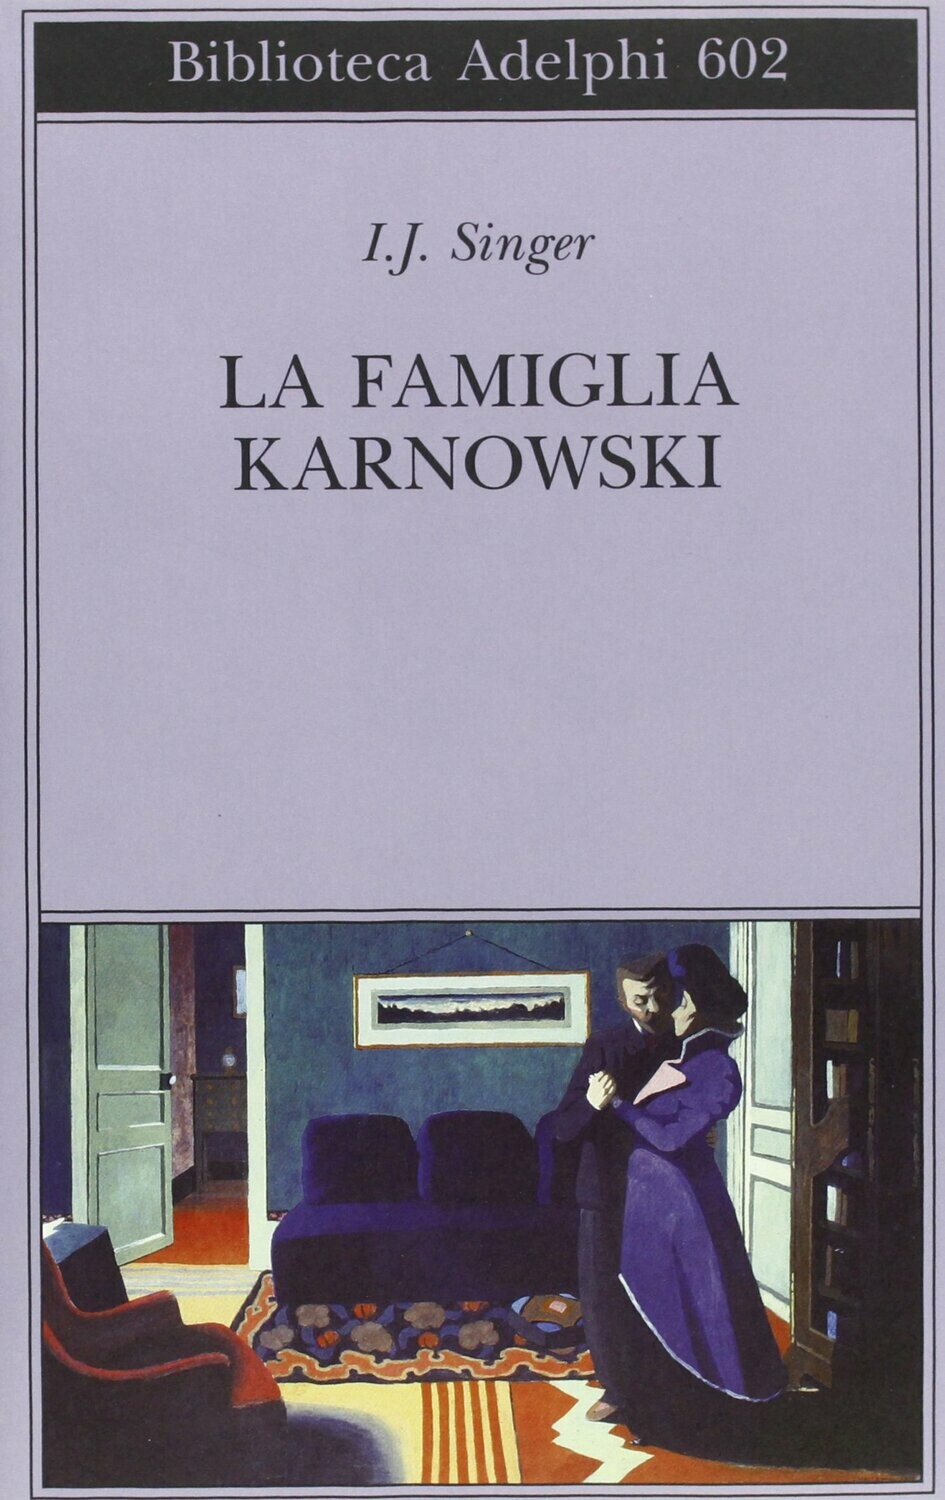 La famiglia Karnowski